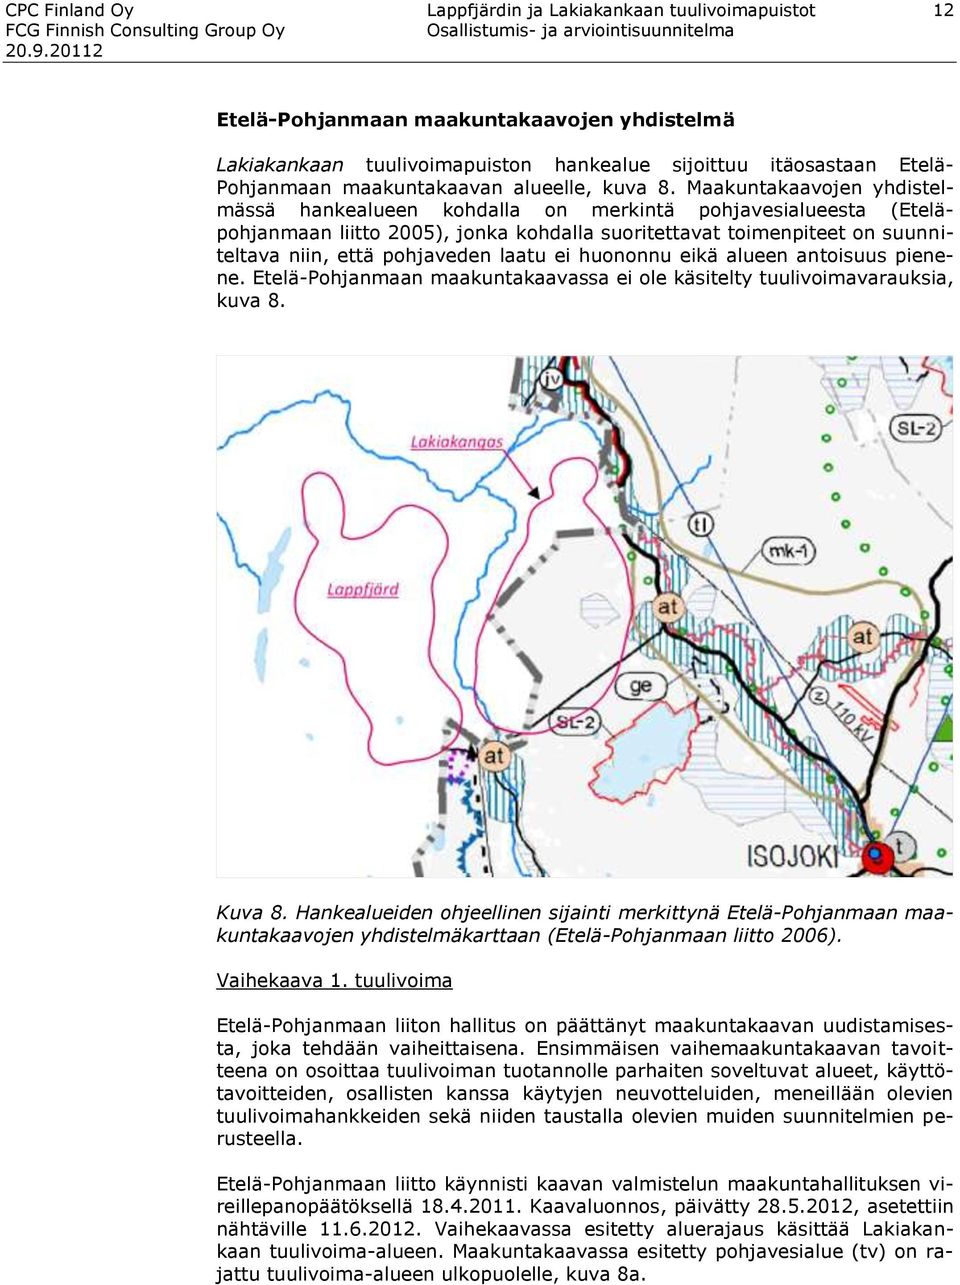 Maakuntakaavojen yhdistelmässä hankealueen kohdalla on merkintä pohjavesialueesta (Eteläpohjanmaan liitto 2005), jonka kohdalla suoritettavat toimenpiteet on suunniteltava niin, että pohjaveden laatu